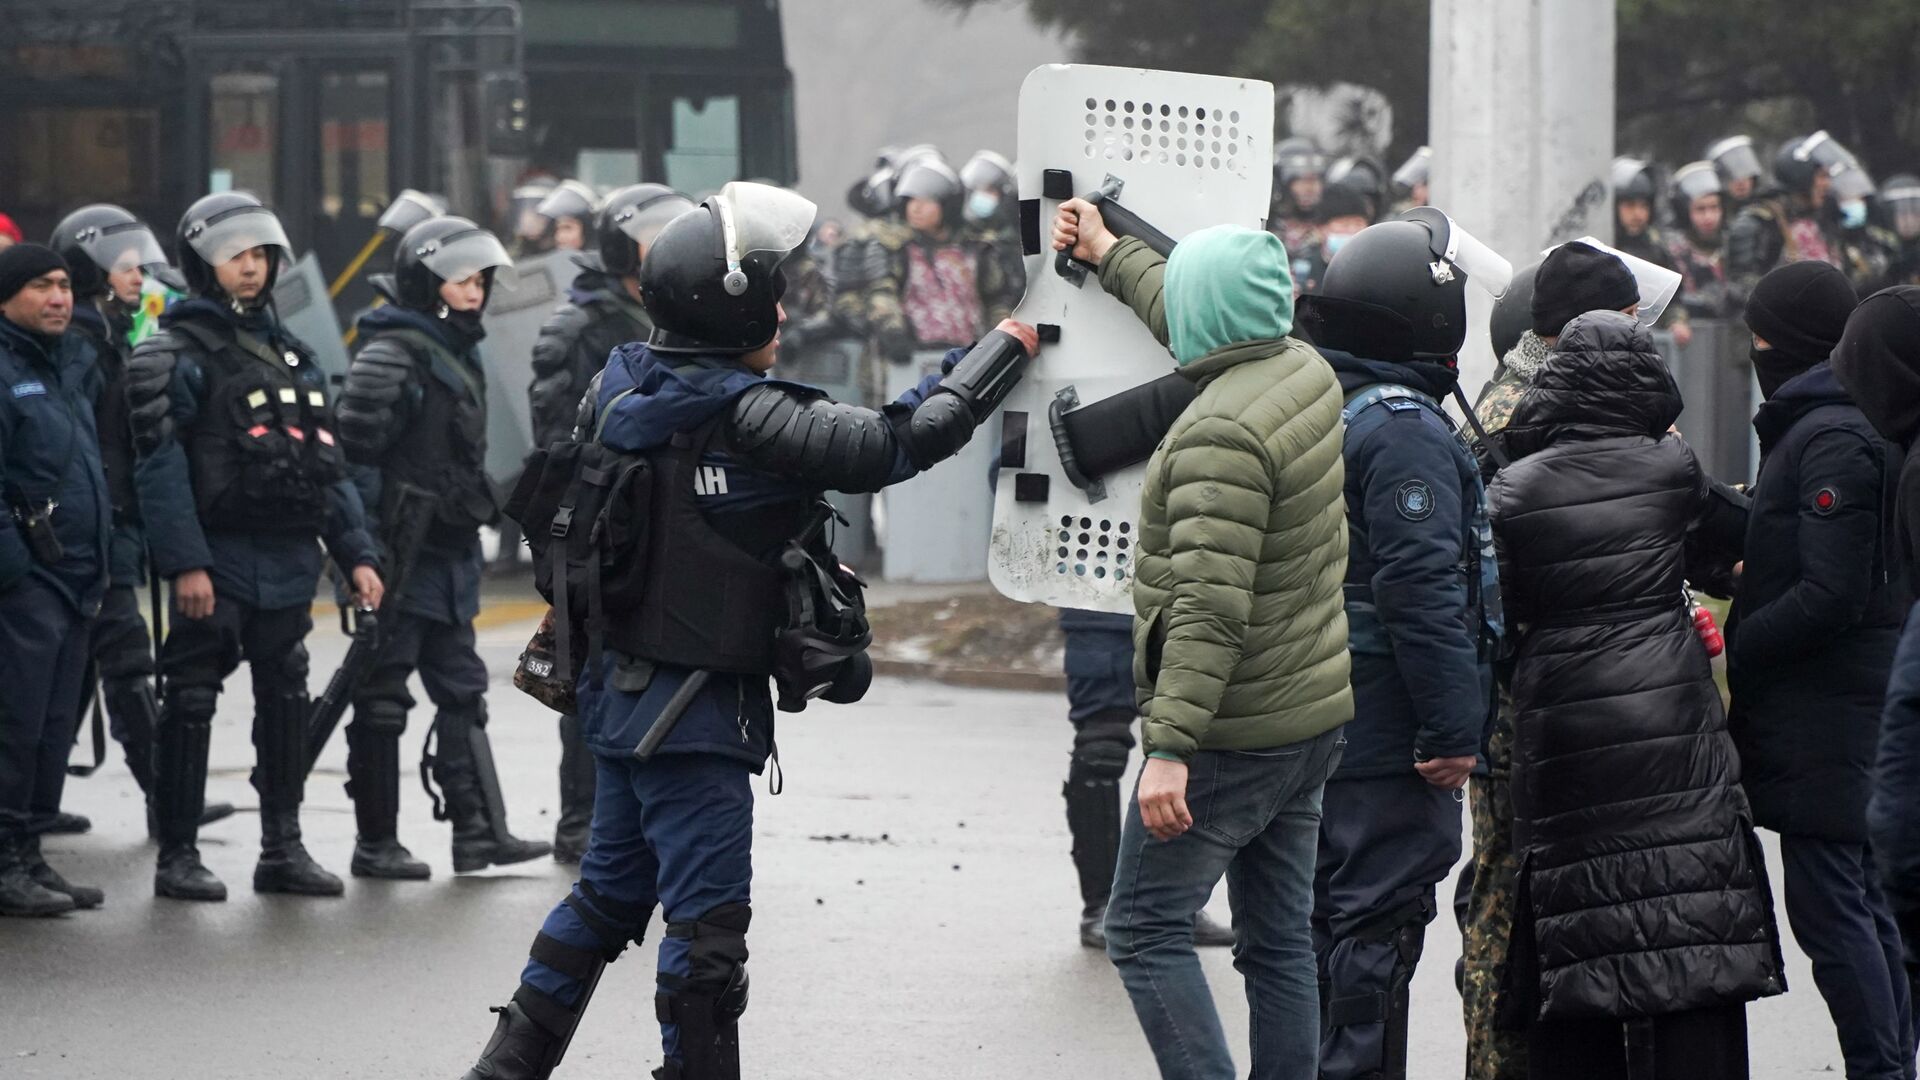 Демонстрант возвращает щит сотруднику ОМОНа во время акции протеста в Алматы, Казахстан, в среду, 5 января 2022 г.  - Sputnik Қазақстан, 1920, 16.01.2022